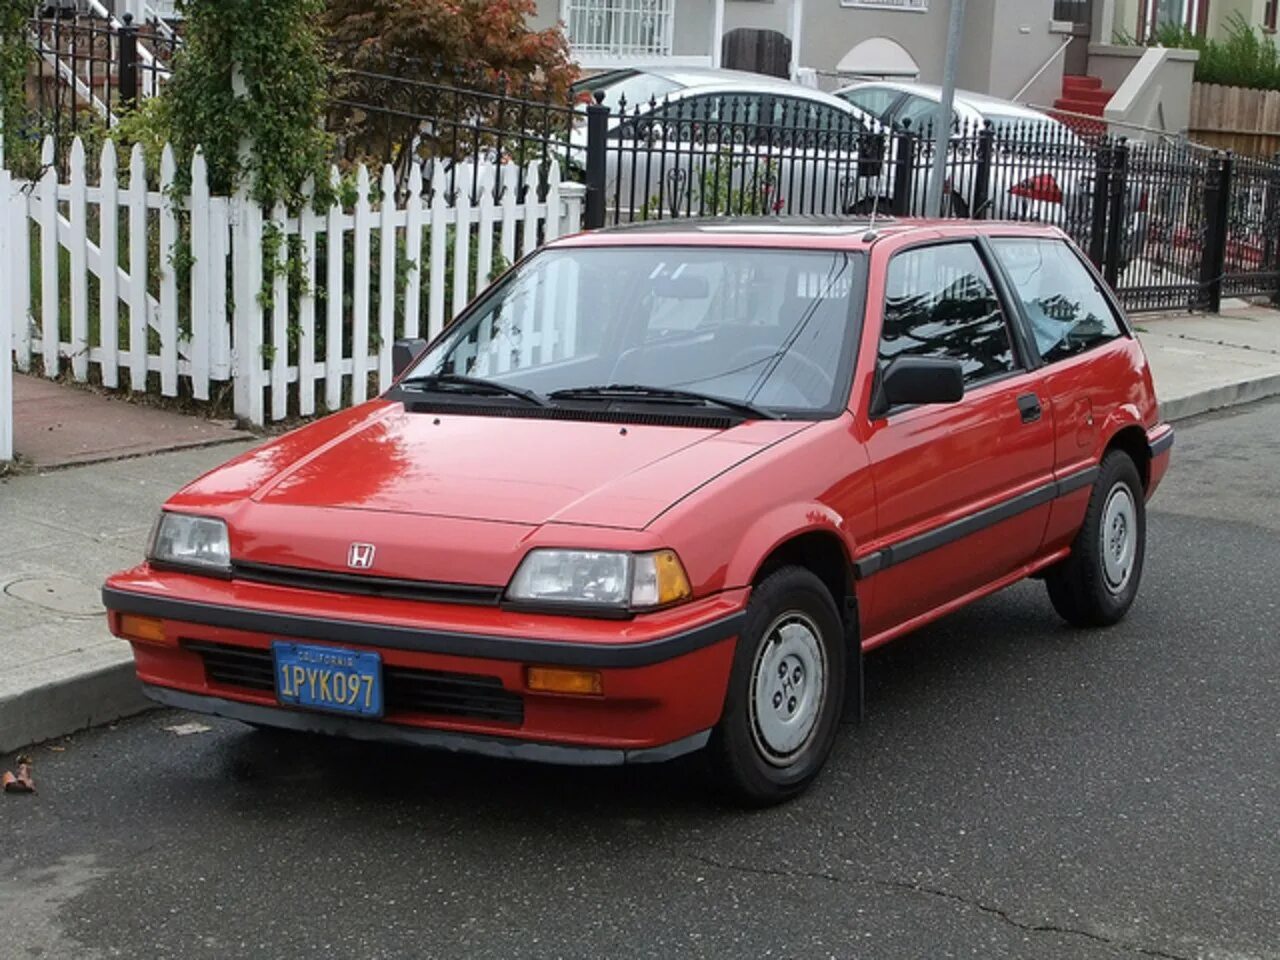 Хонда Цивик 1986. Хонда Цивик 1986 хэтчбек. Хонда Цивик 1986 года. Honda Civic 1985 хэтчбек. Хонда 1986